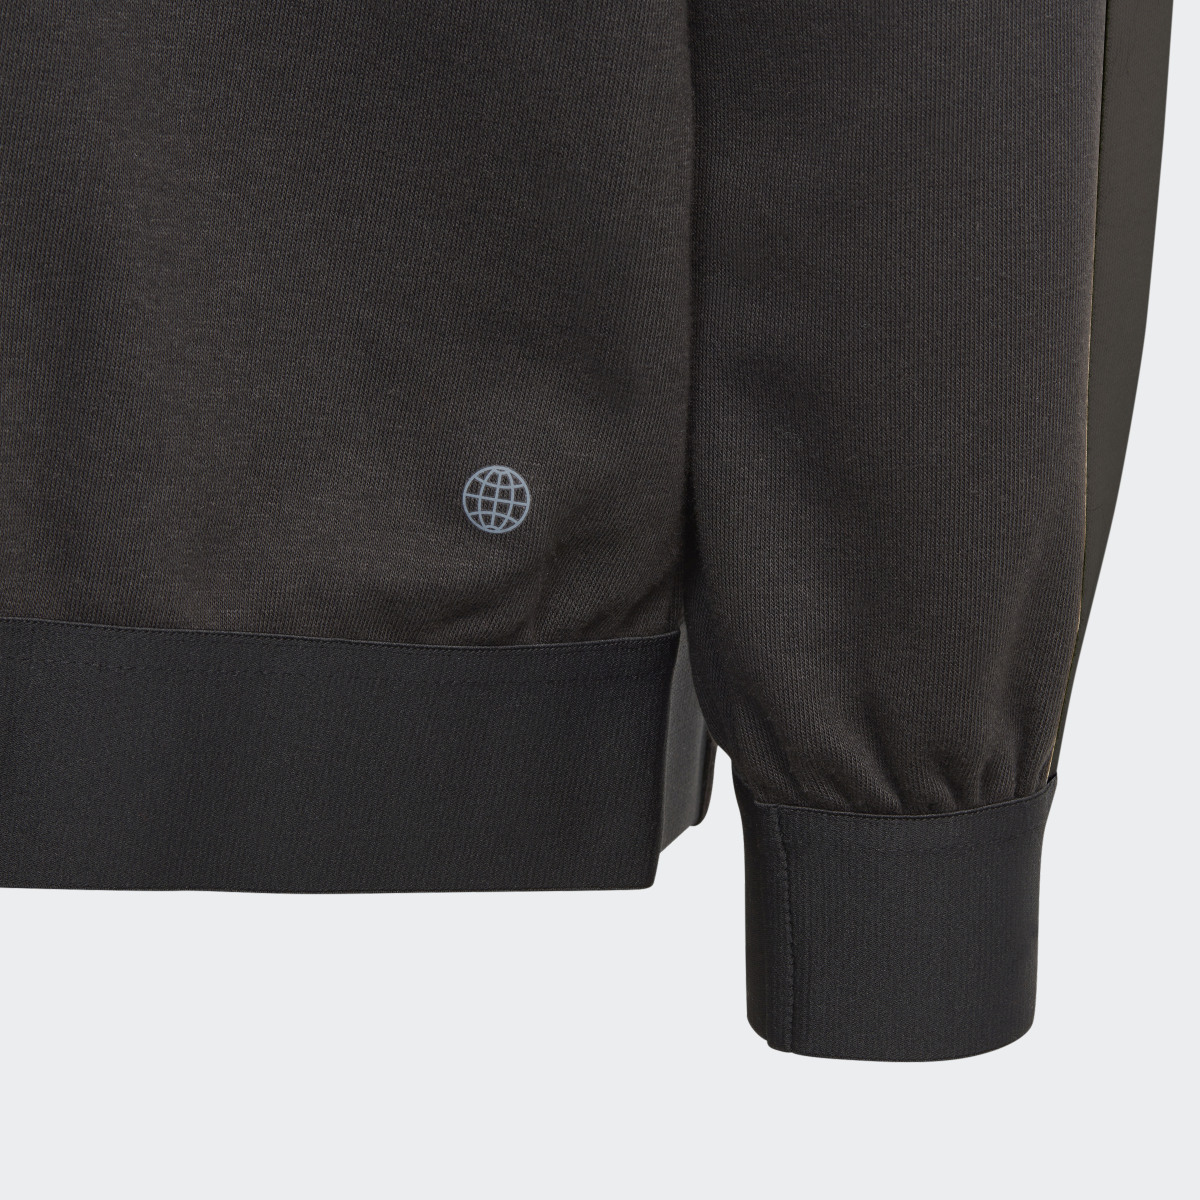 Adidas Tiro Suit Up Knit Track Jacket. 5